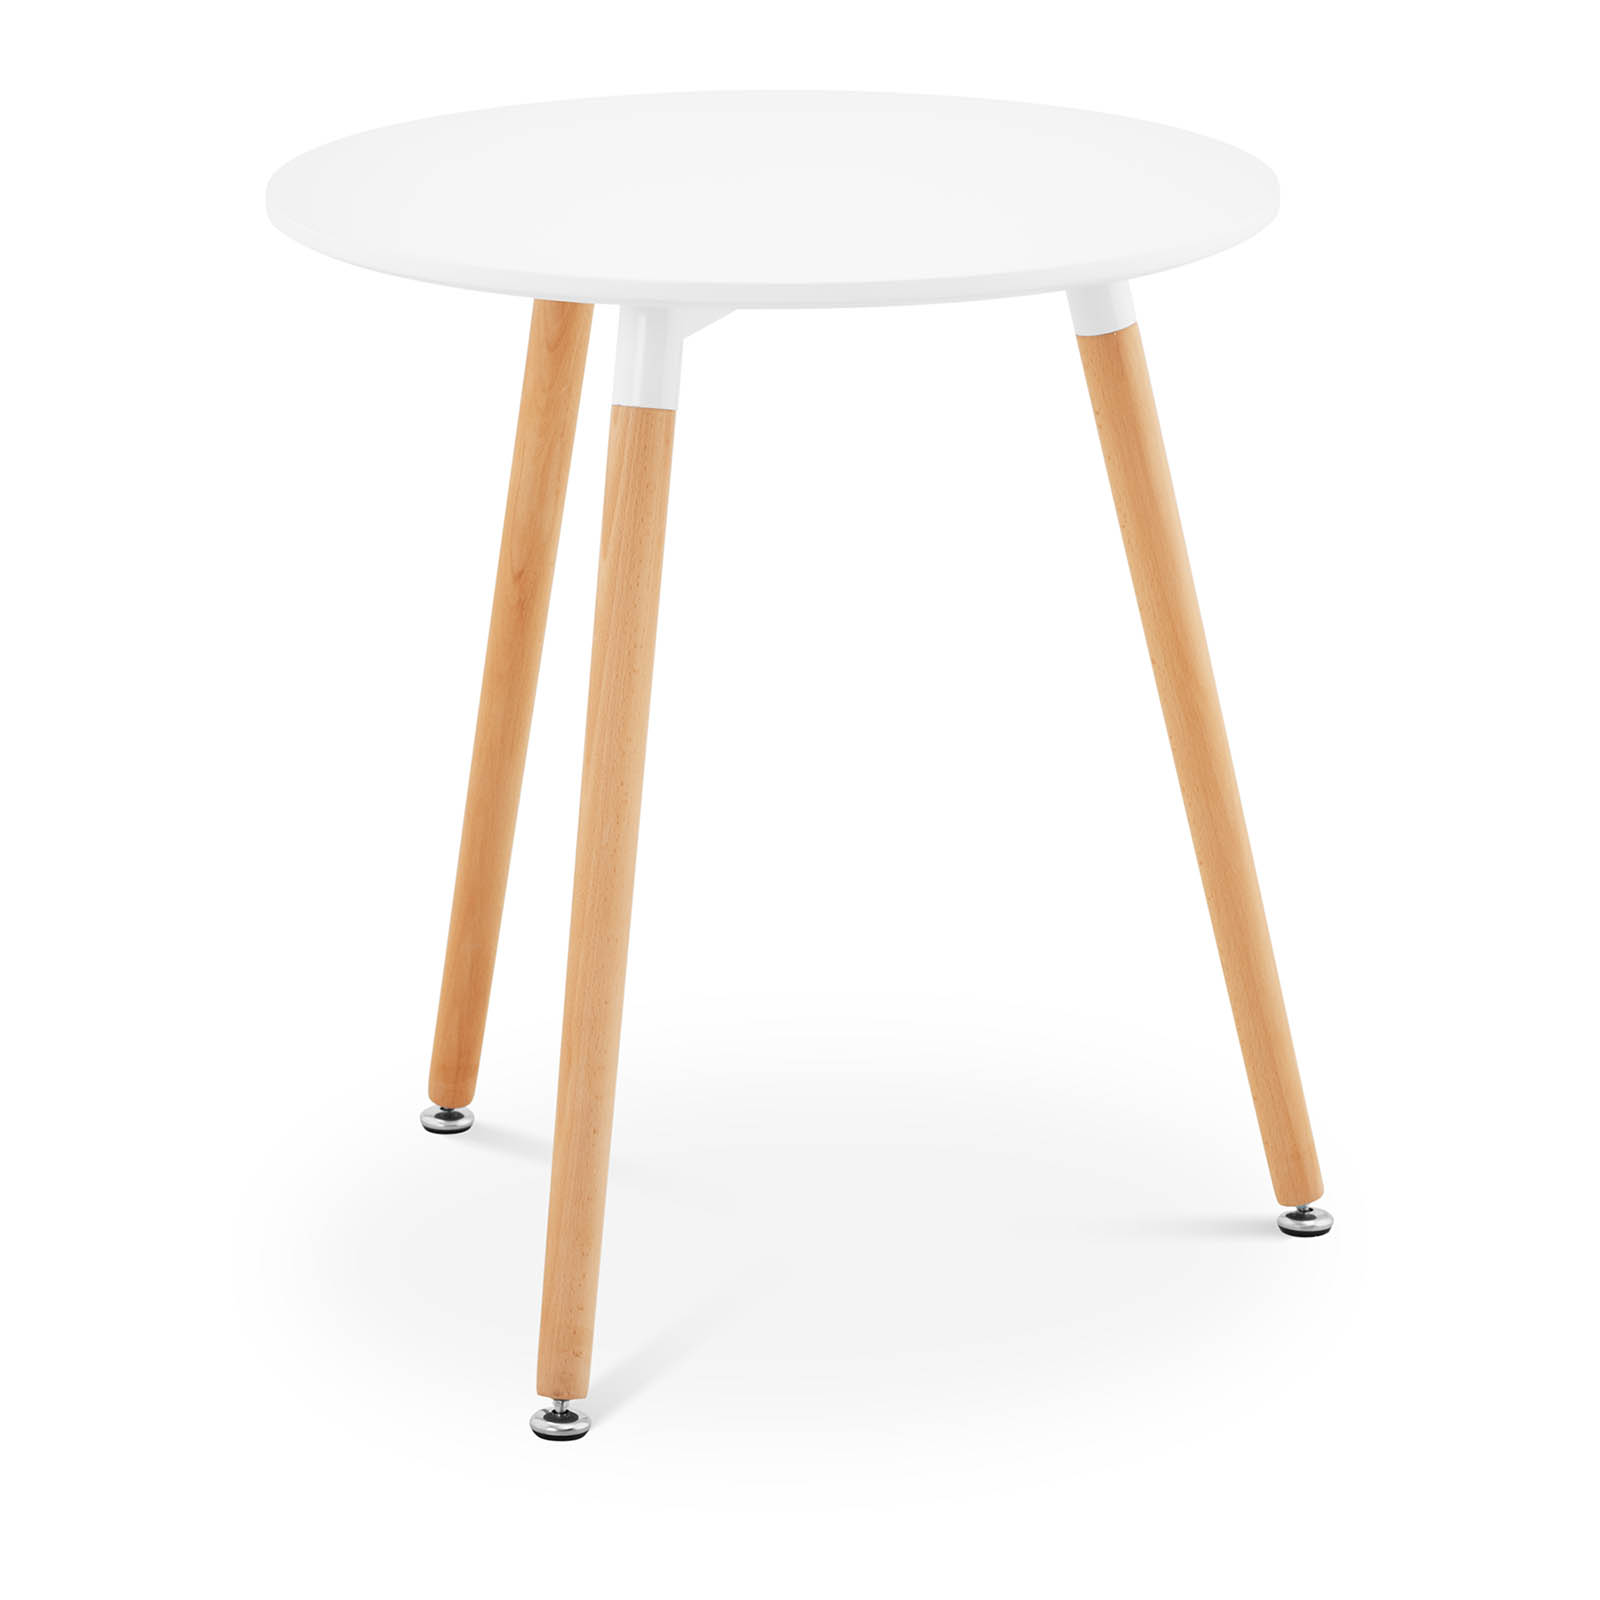 Rundt bord - 60 cm i diameter - hvidt